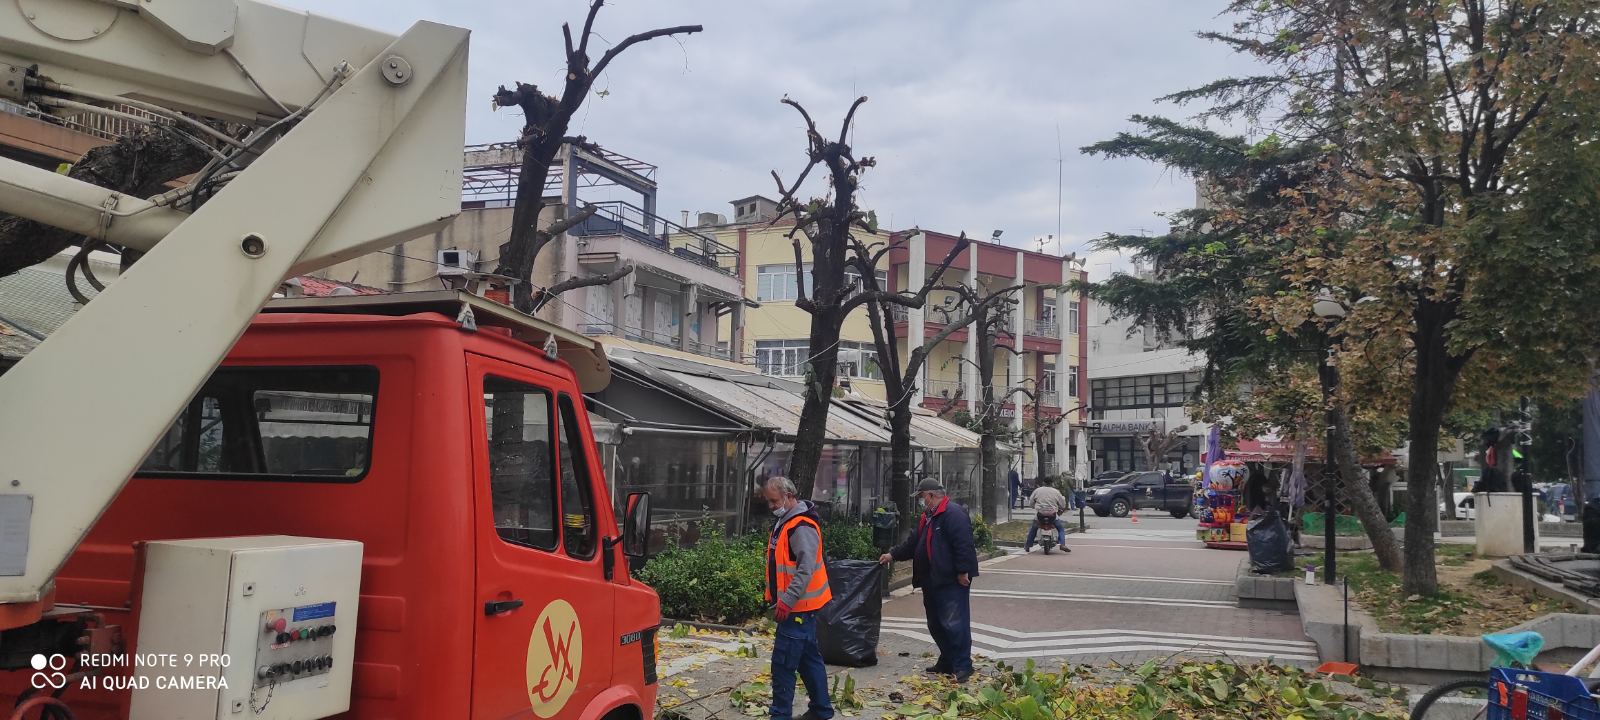 Δήμος Τυρνάβου: Έκοψε επικίνδυνα κλαδιά δέντρων 